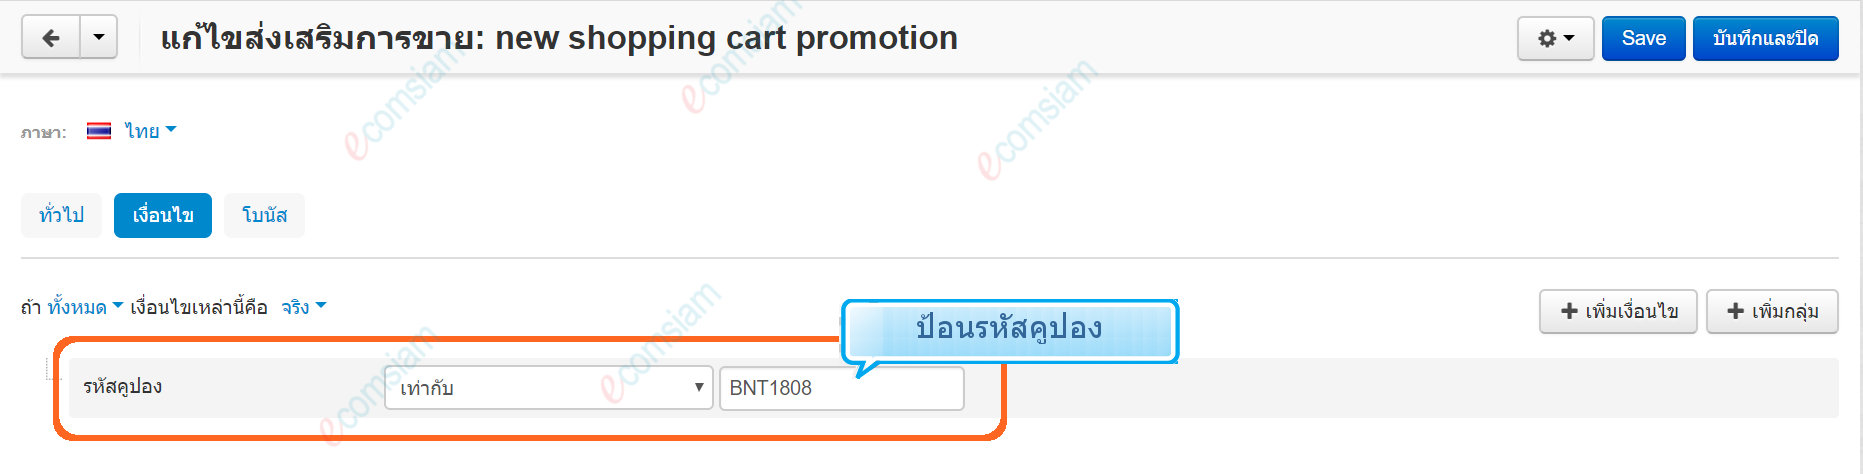 เว็บไซต์สำเร็จรูปไทย - คู่มือร้านออนไลน์ - การจัดการร้านออนไลน์ - สร้างเว็บไซต์ - การตลาด โปรโมชั่น promotion สร้างคูปอง  create coupon